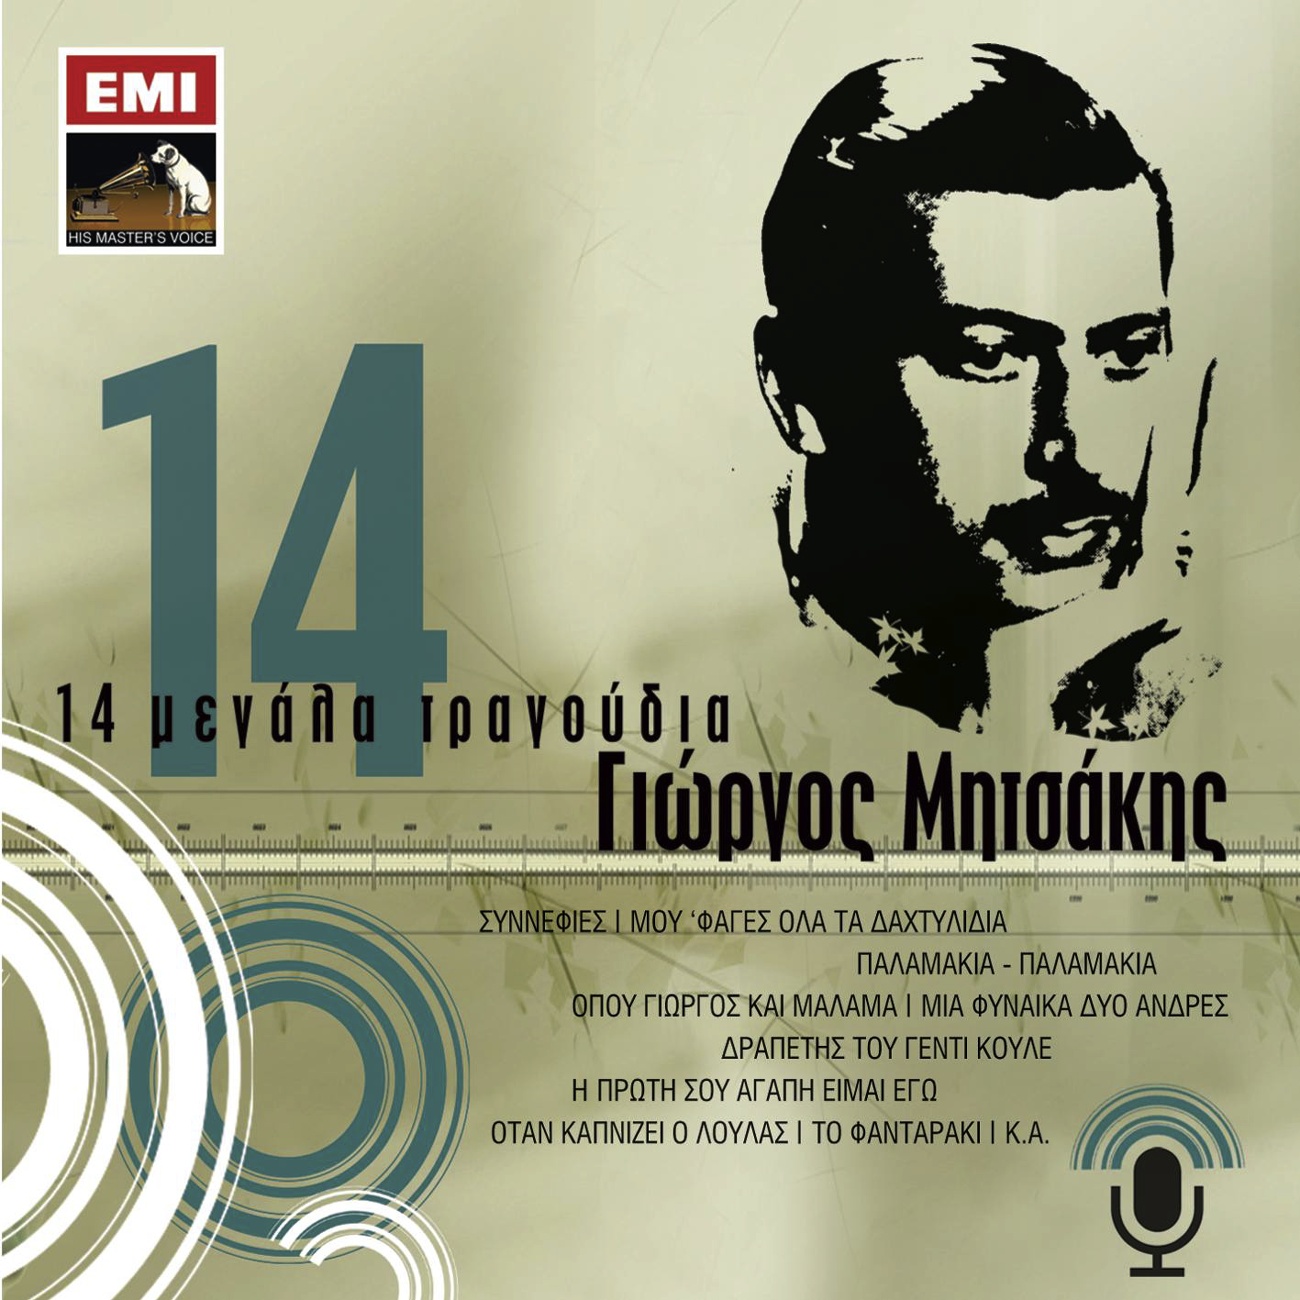 14 Megala Tragoudia - Giorgos Mitsakis